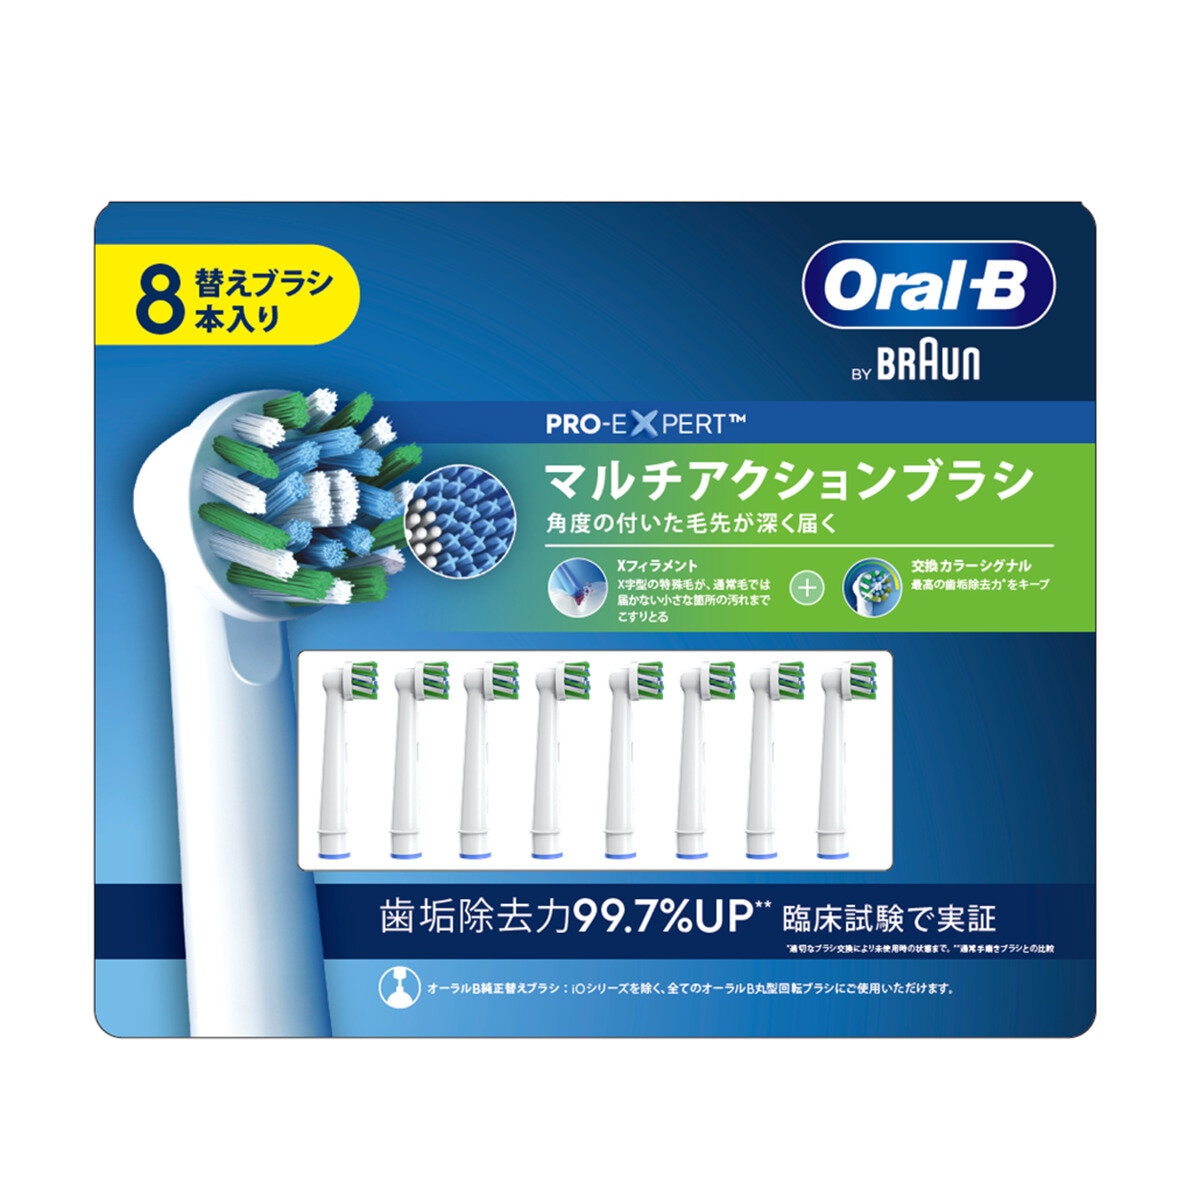 【新品未使用】BRAUN Oral-B マルチアクションブラシ 8本組交換カラーシグナル毛